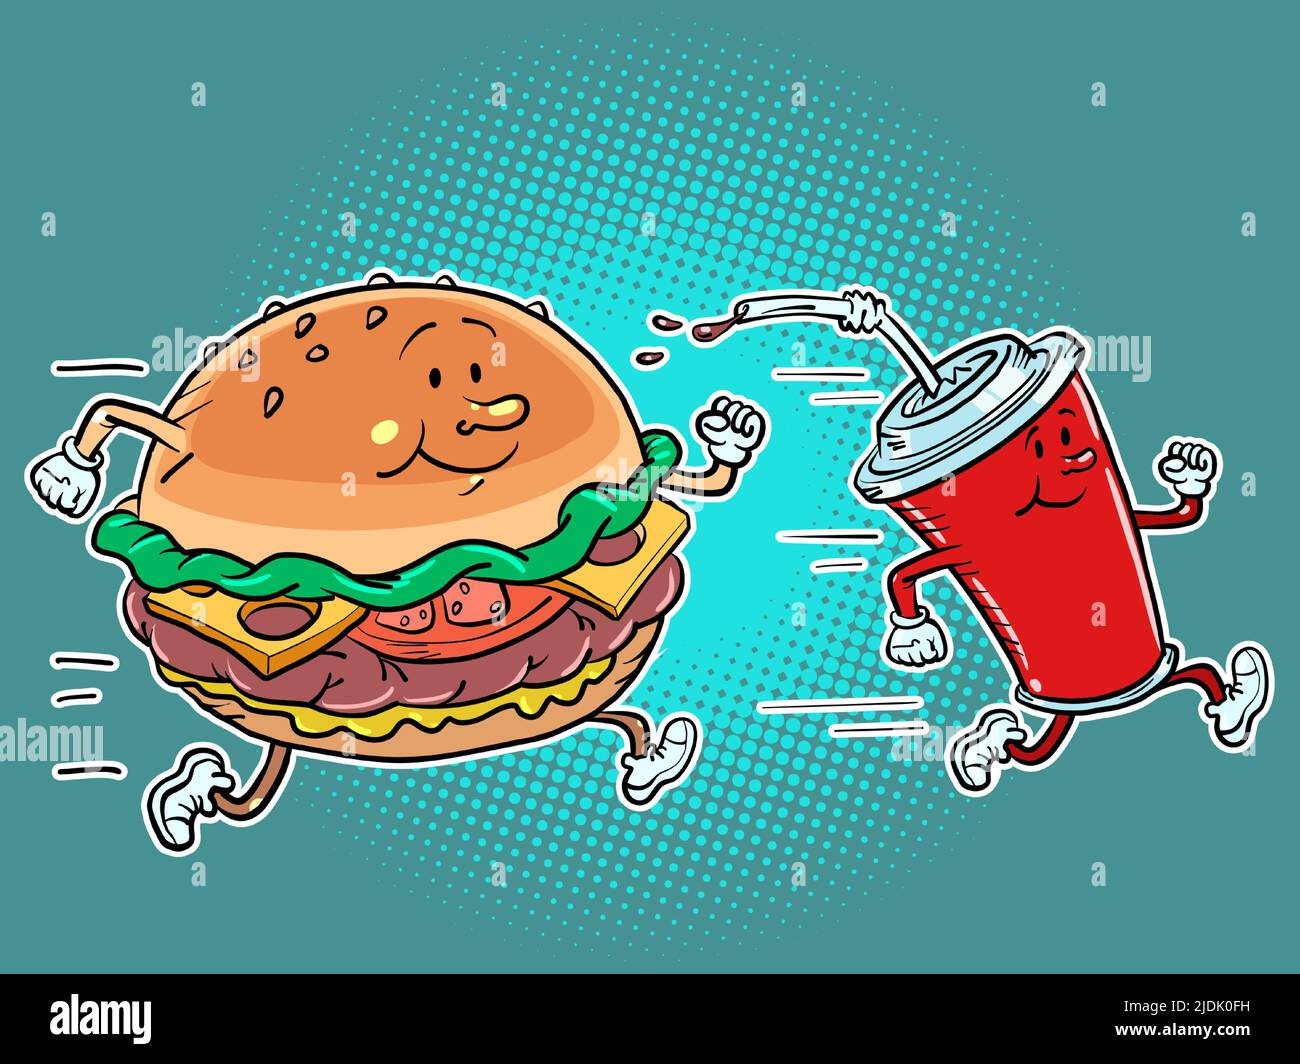 Los personajes de comida rápida hamburguesa y bebida de cola corren. Estilo de vida deportivo y comida callejera Ilustración del Vector